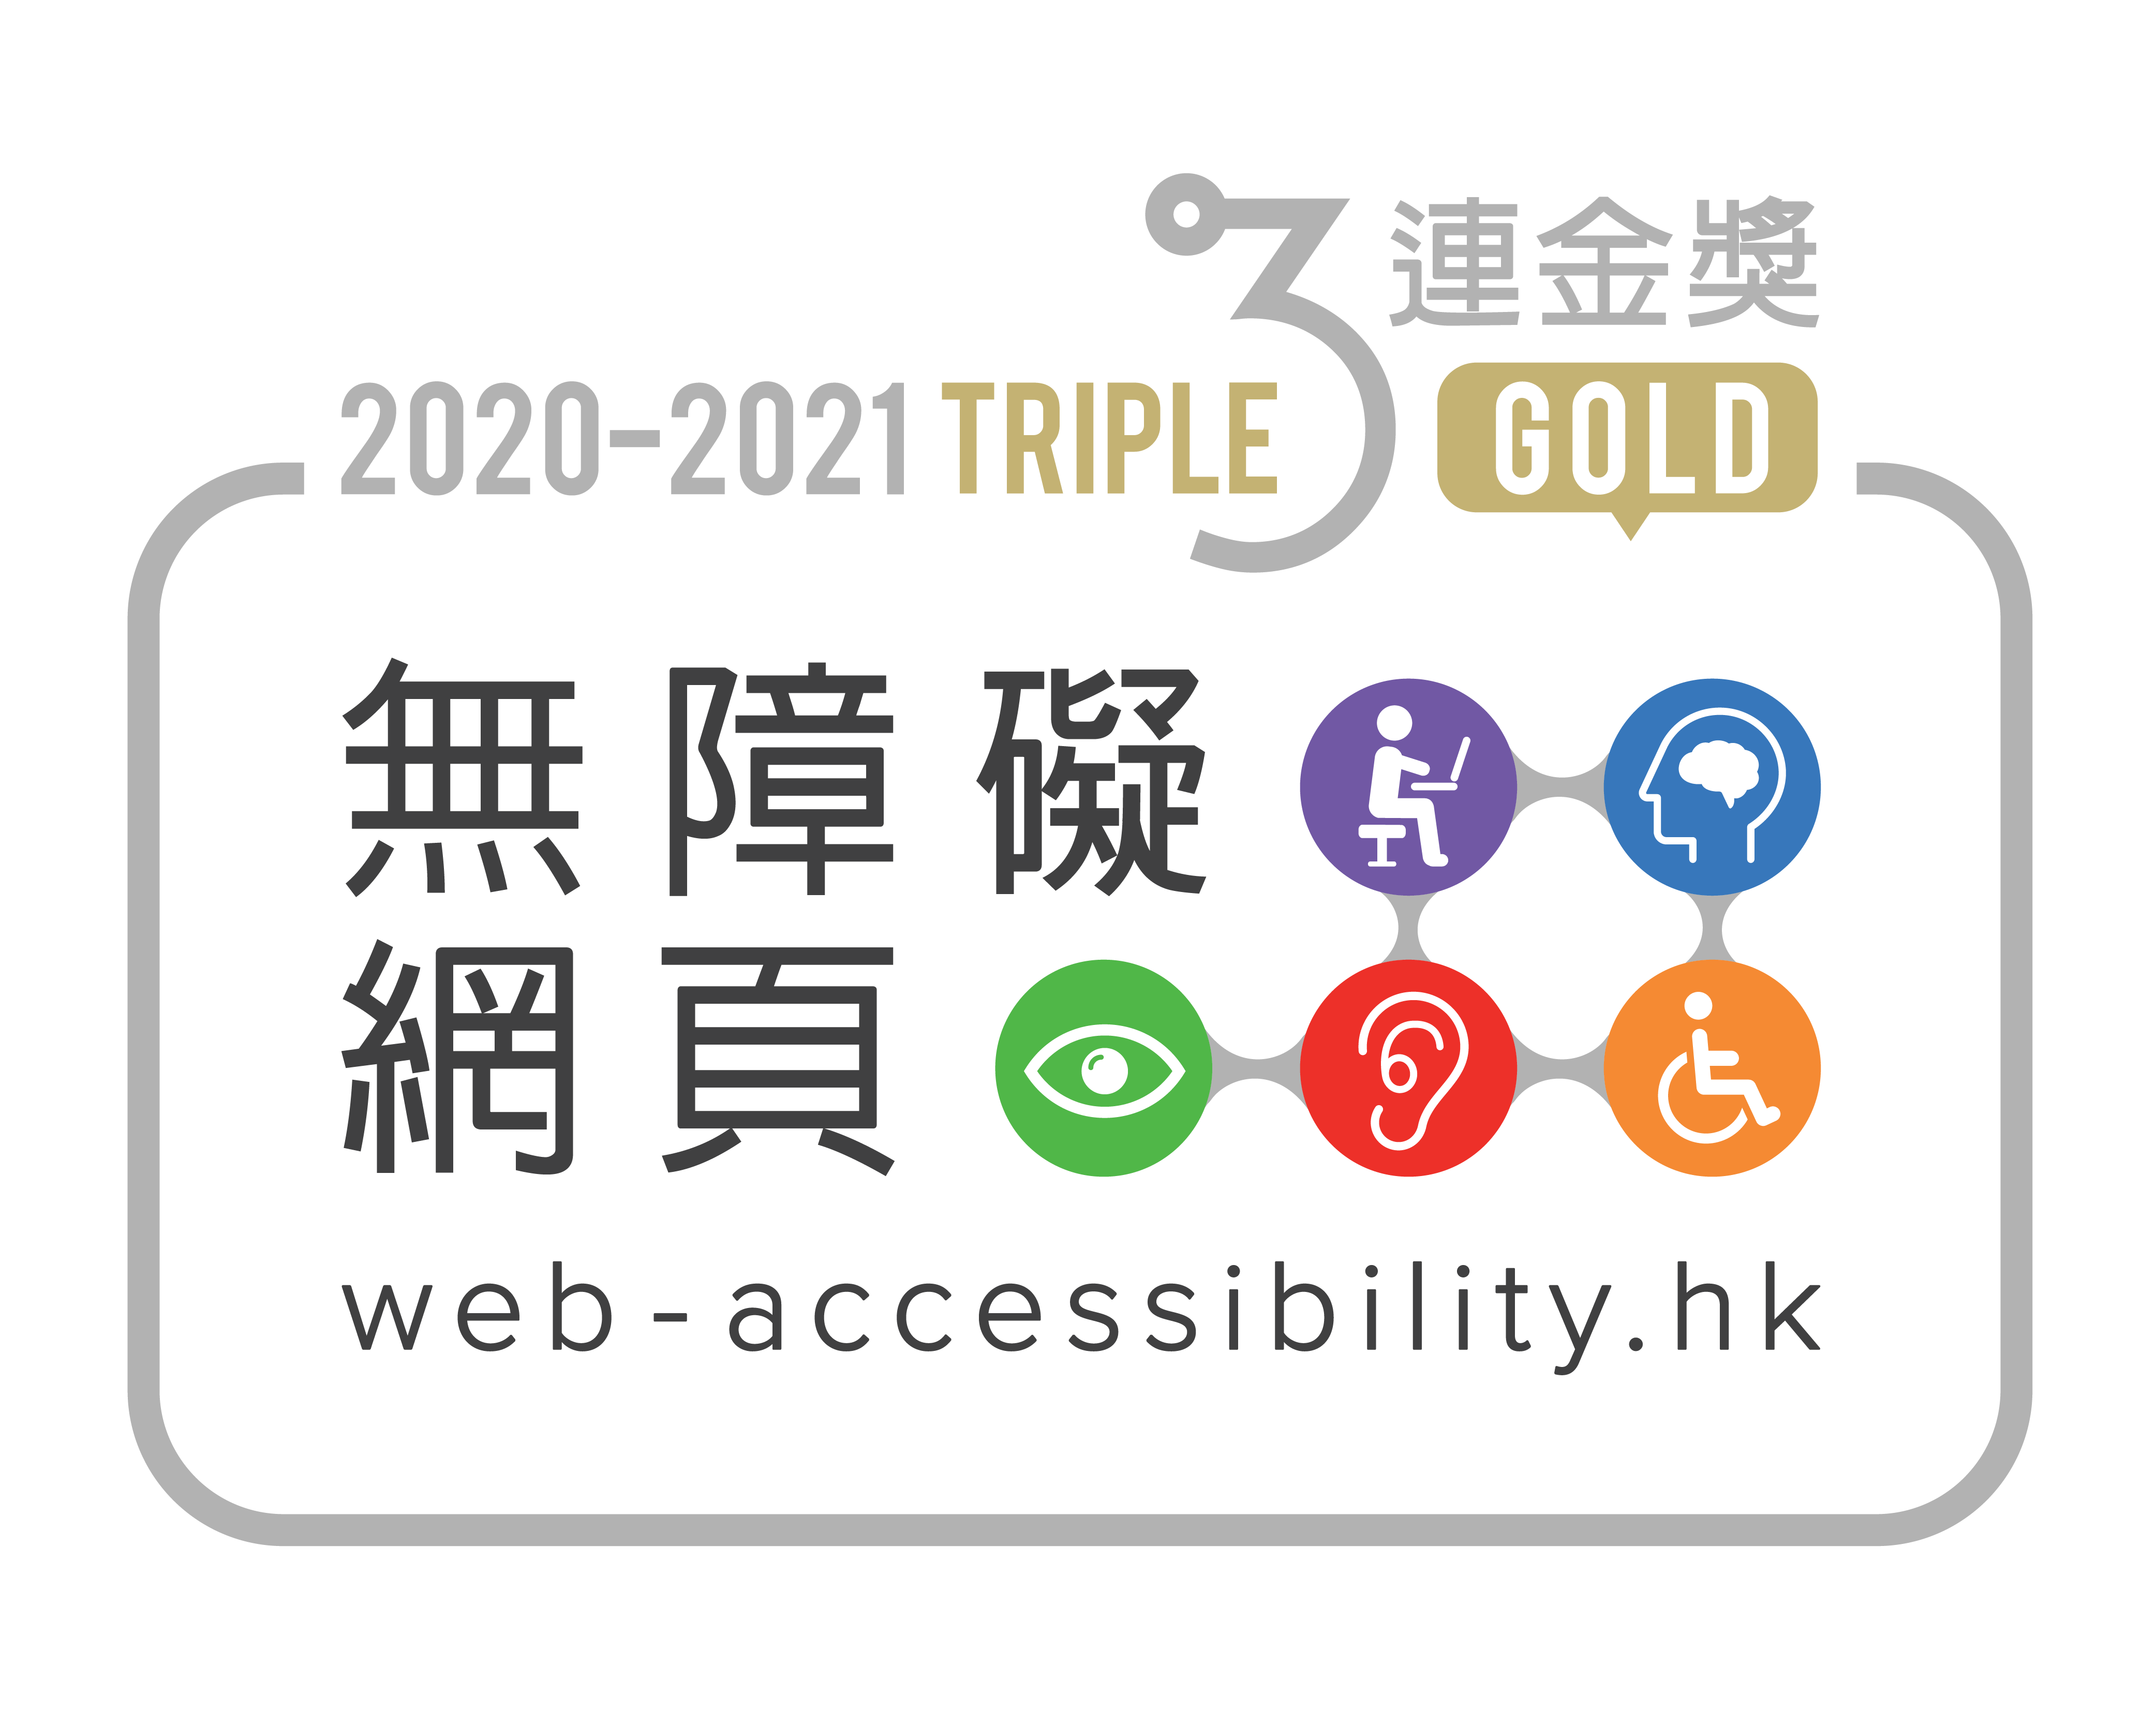 2020-2021 無障礙網頁嘉許計劃3連金獎標誌